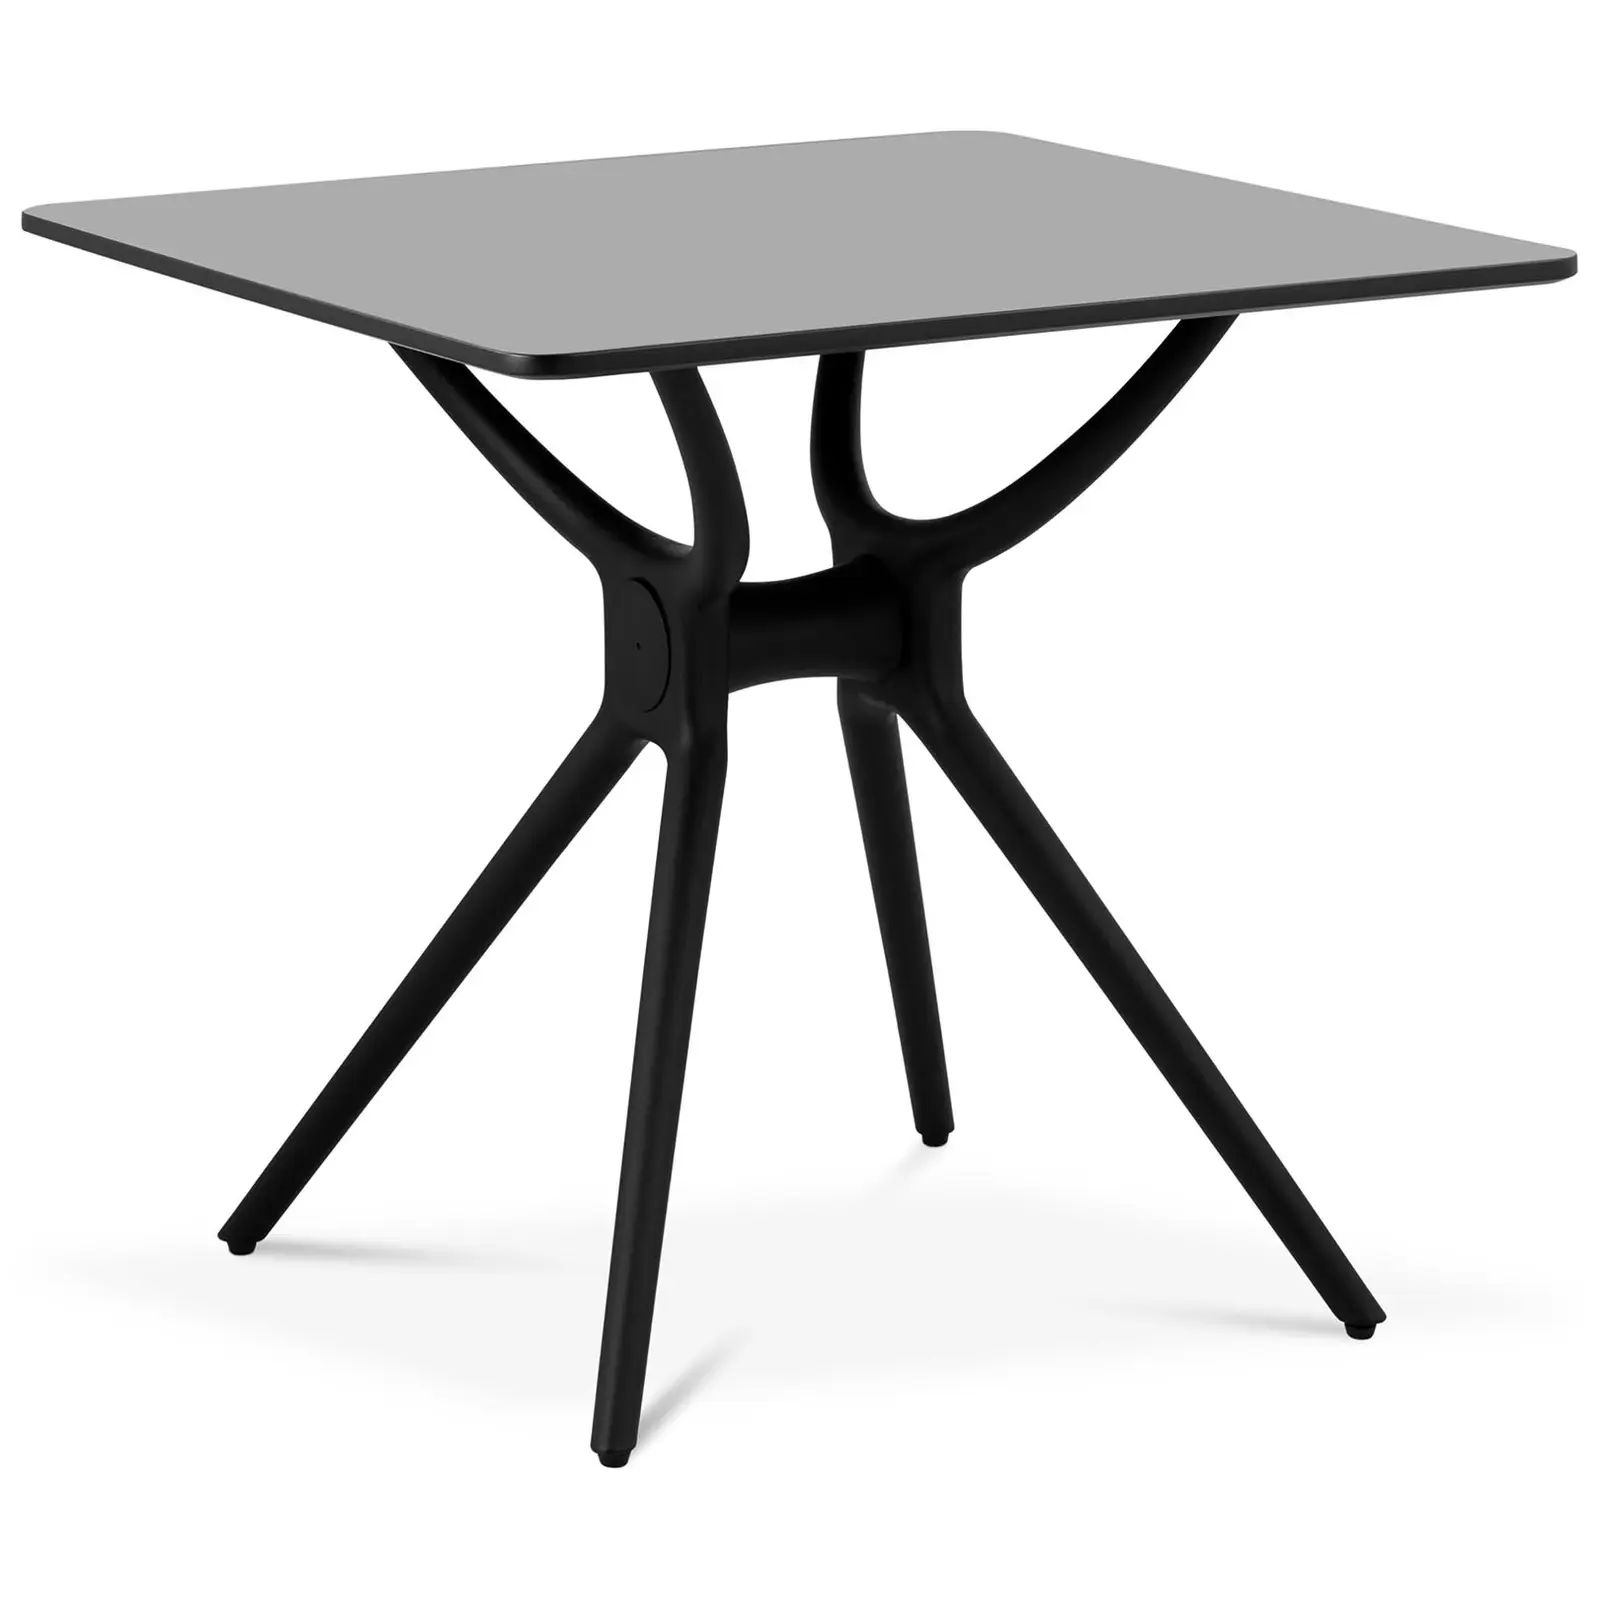 B-zboží Stůl - čtvercový - 80 x 80 cm - černý